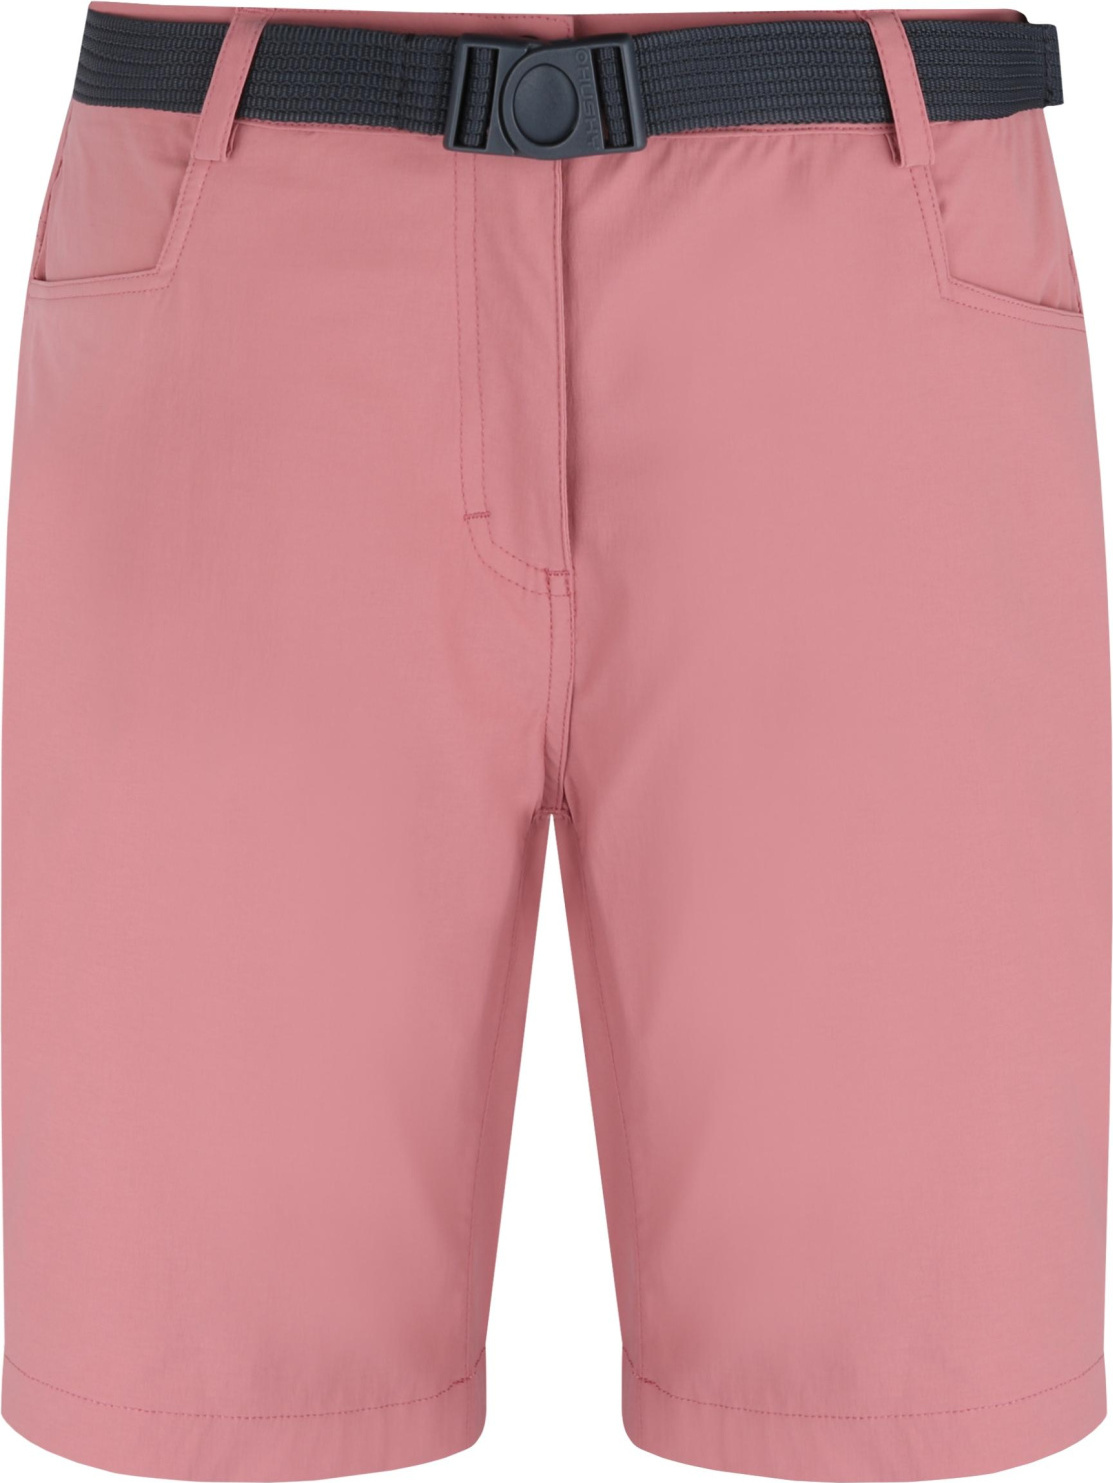 Dámské funkční šortky HUSKY Kimbi růžové Velikost: L